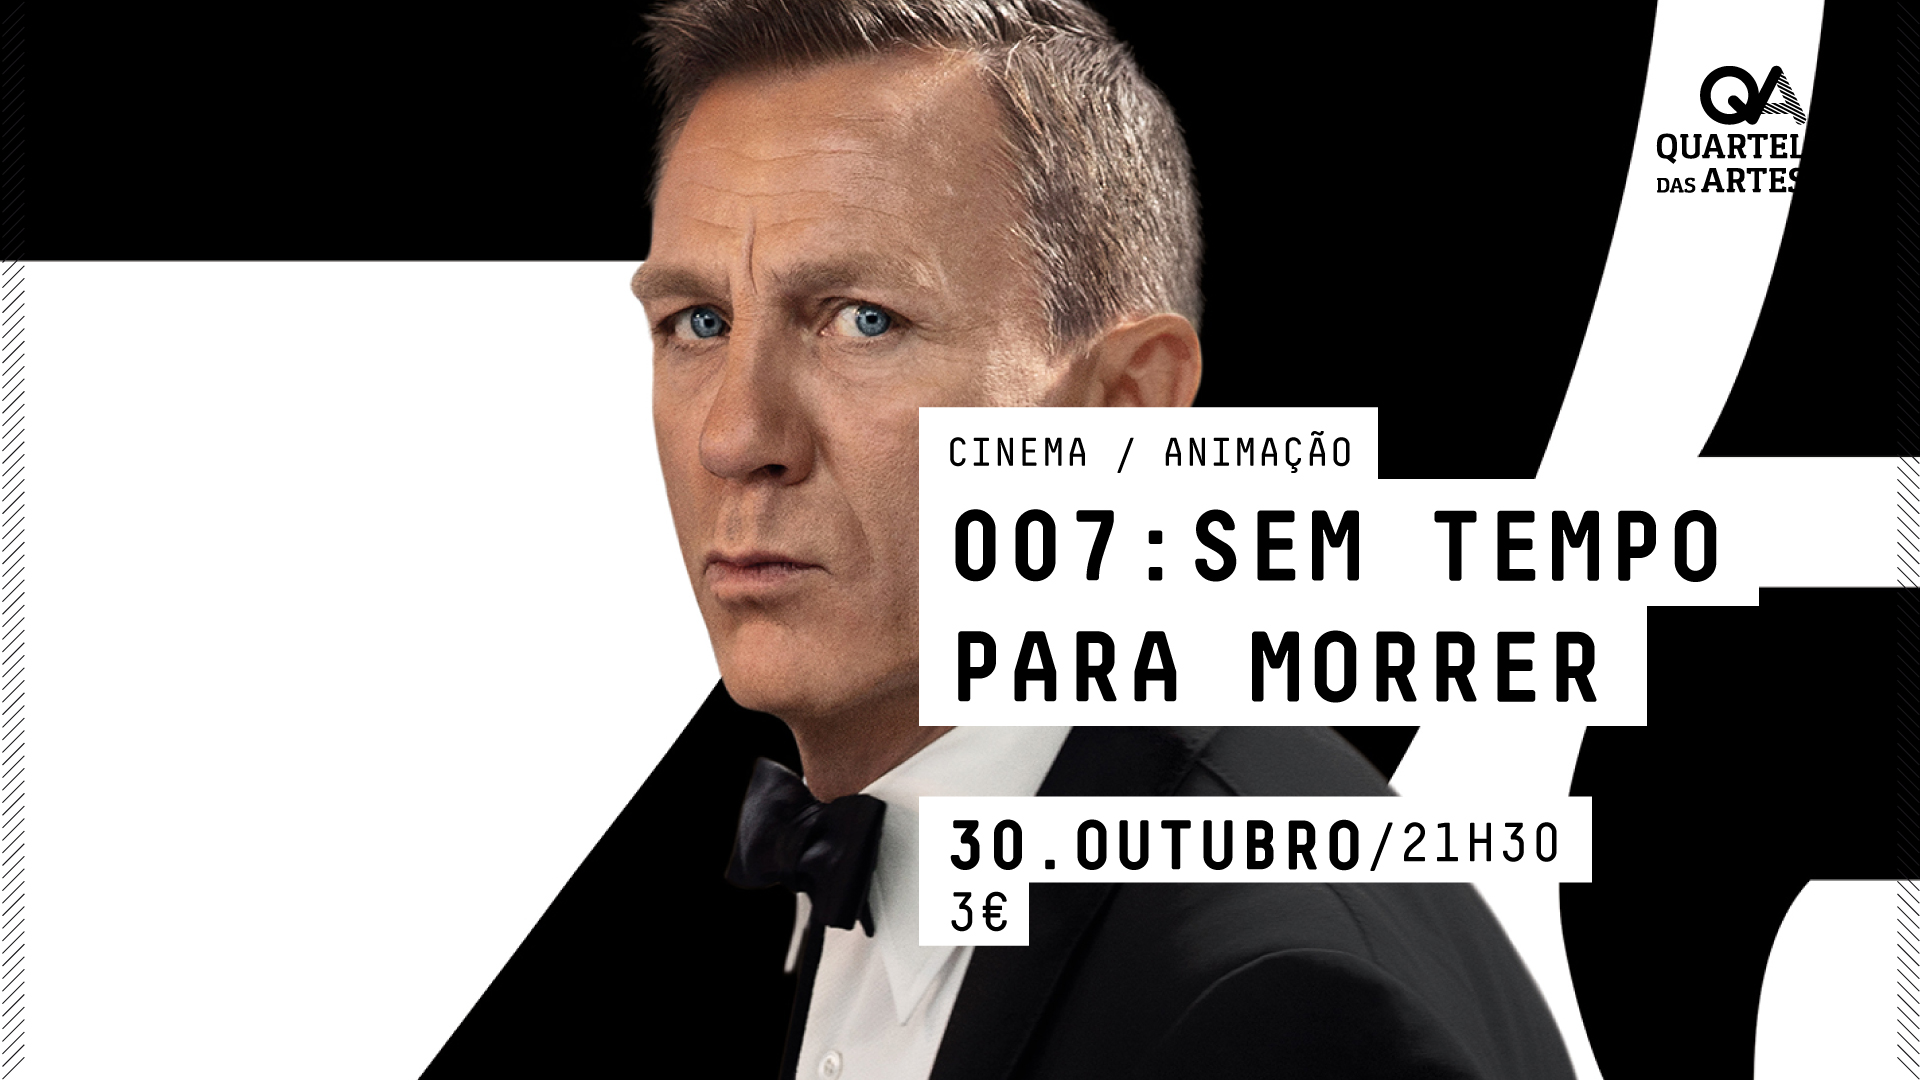 CINEMA - 007: SEM TEMPO PARA MORRER